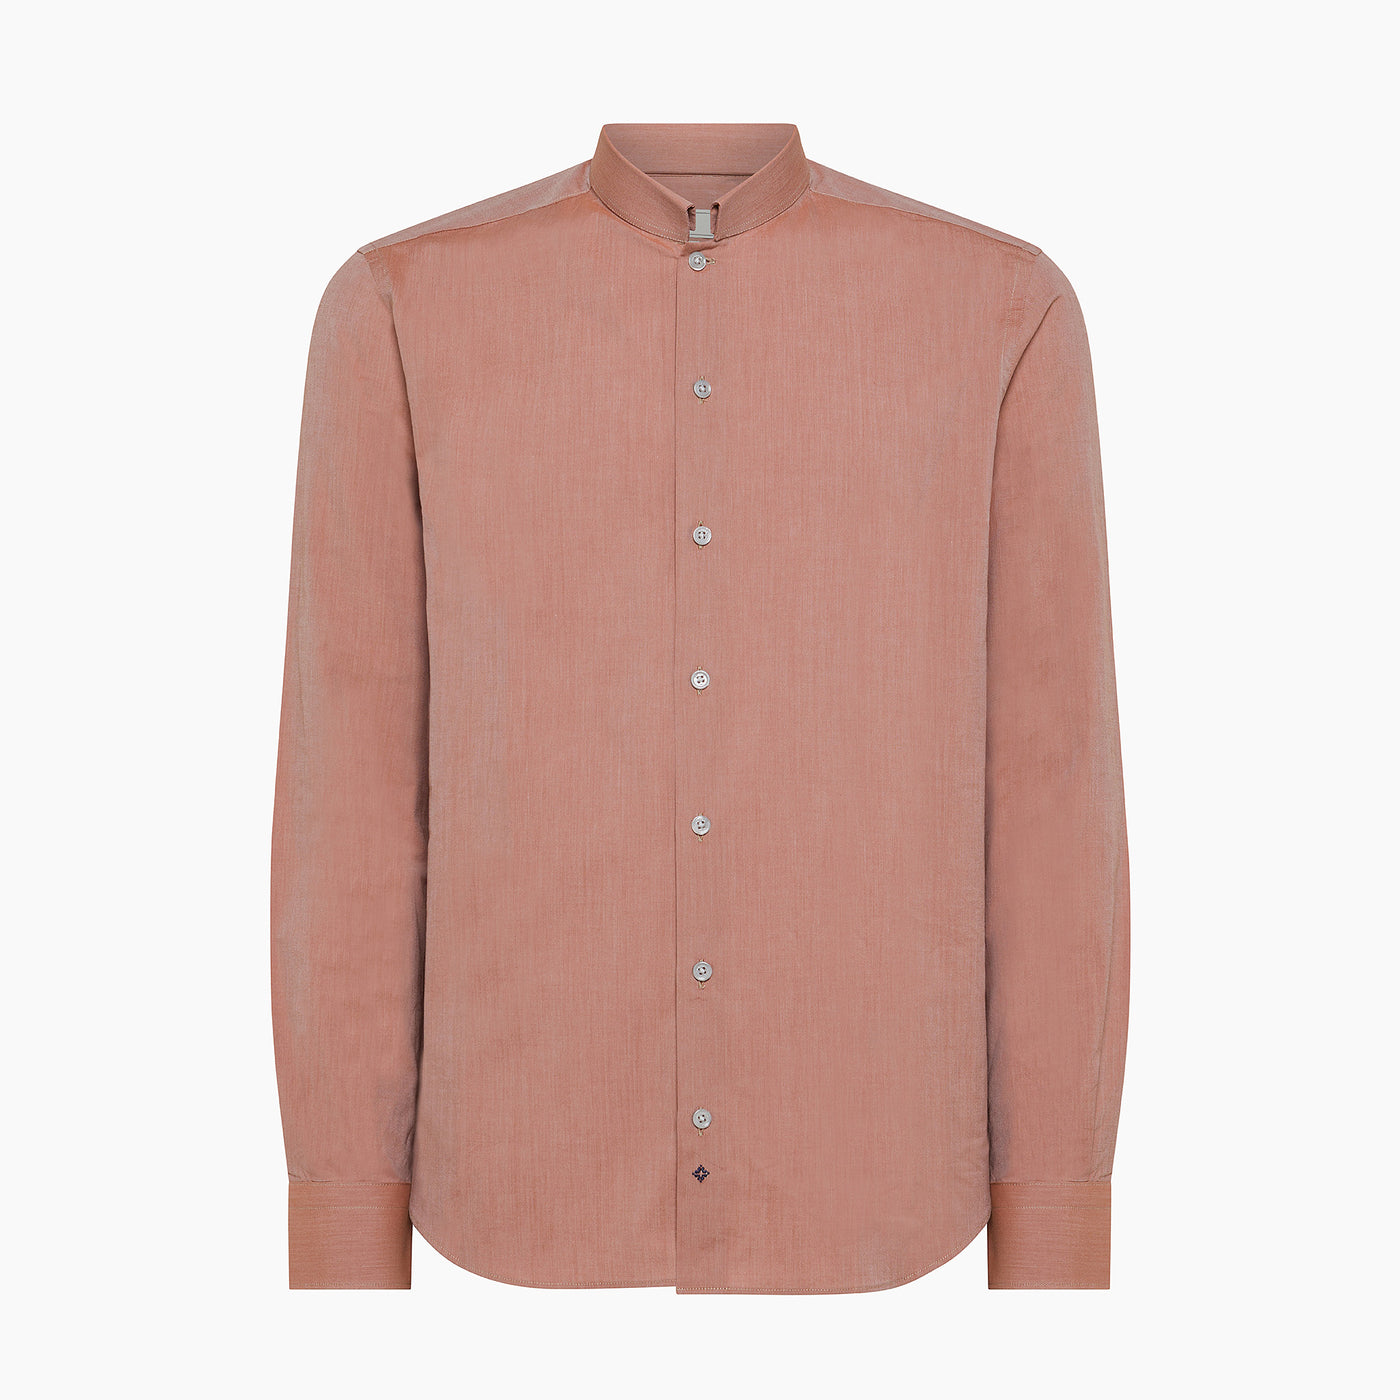 Conrad shirt in Cotton Micro Oxford